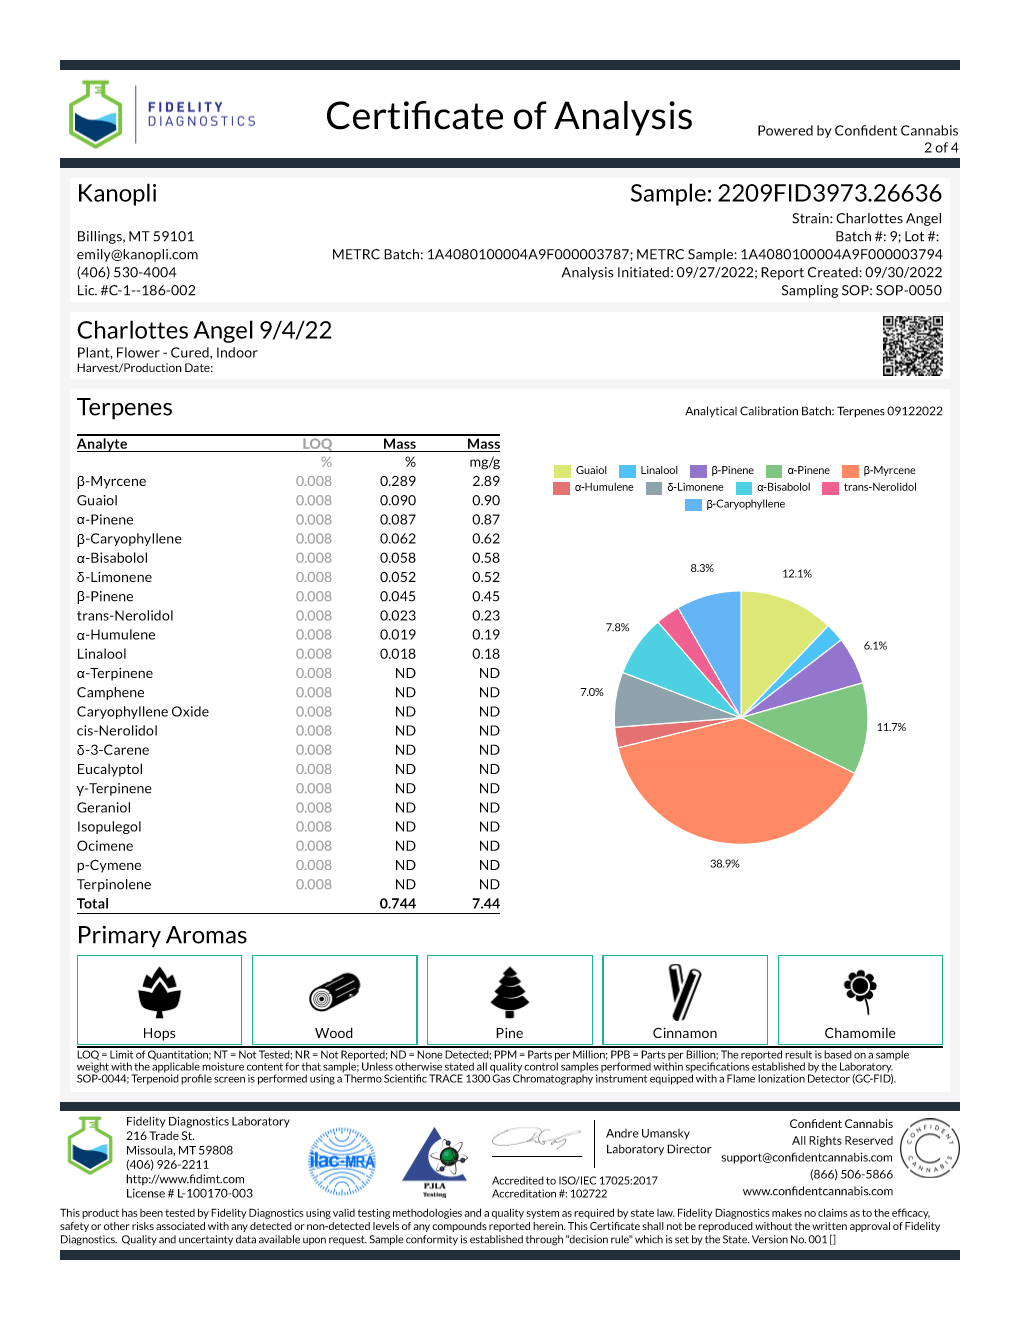 Charlotte's Angel - Hybrid bud (6.64% THC; 7.77% CBD) Sept. 2022 - 1/4 oz. (7 grams)